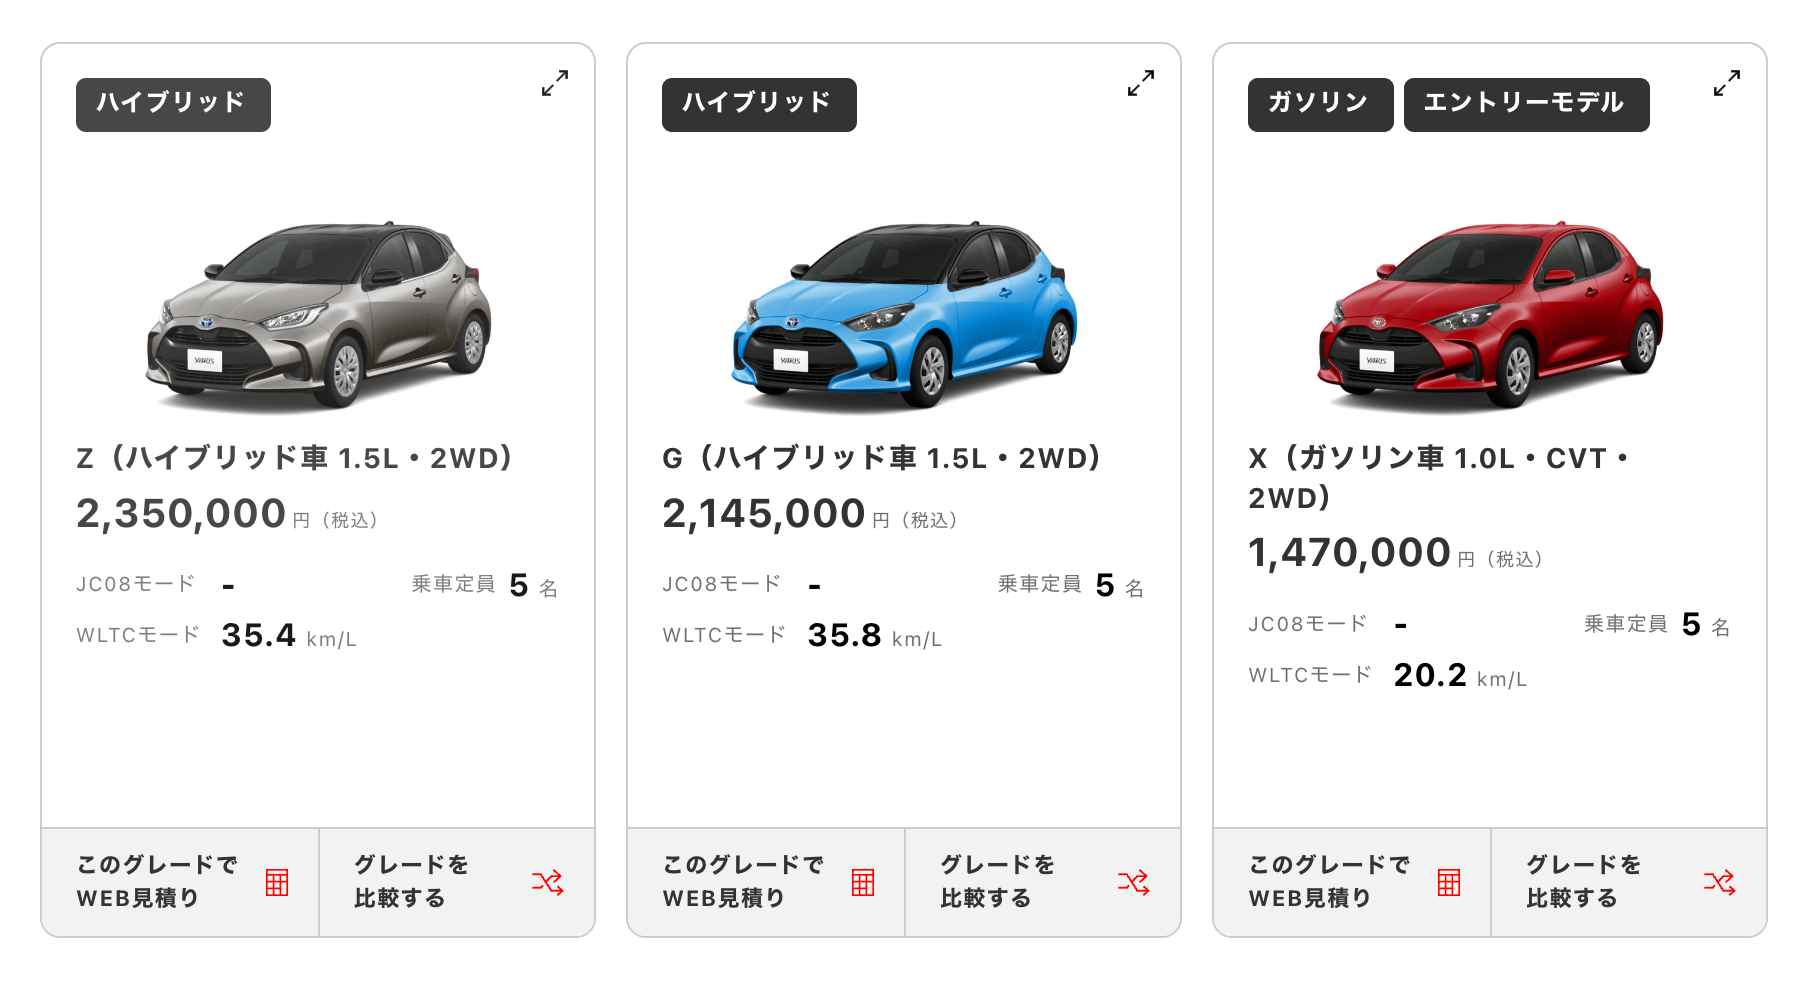 Авто с левым рулем в Японии – реальность?